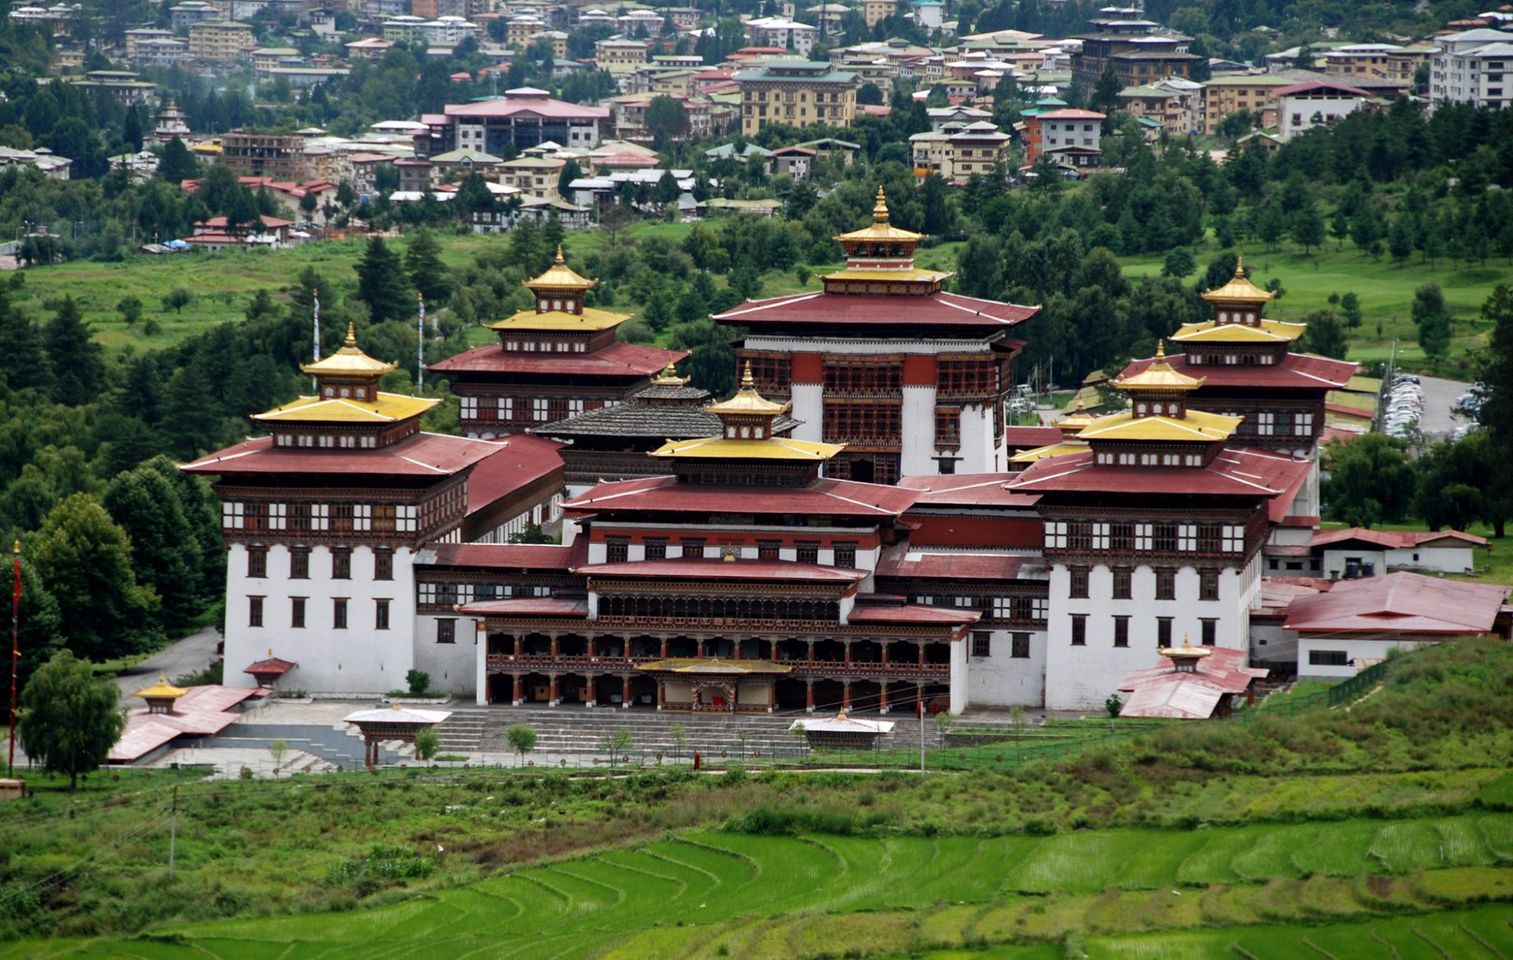 Het onthullen van de Mystieke Mongar Dzong: Een vesting van Bhutans rijke historische en culturele erfgoed.